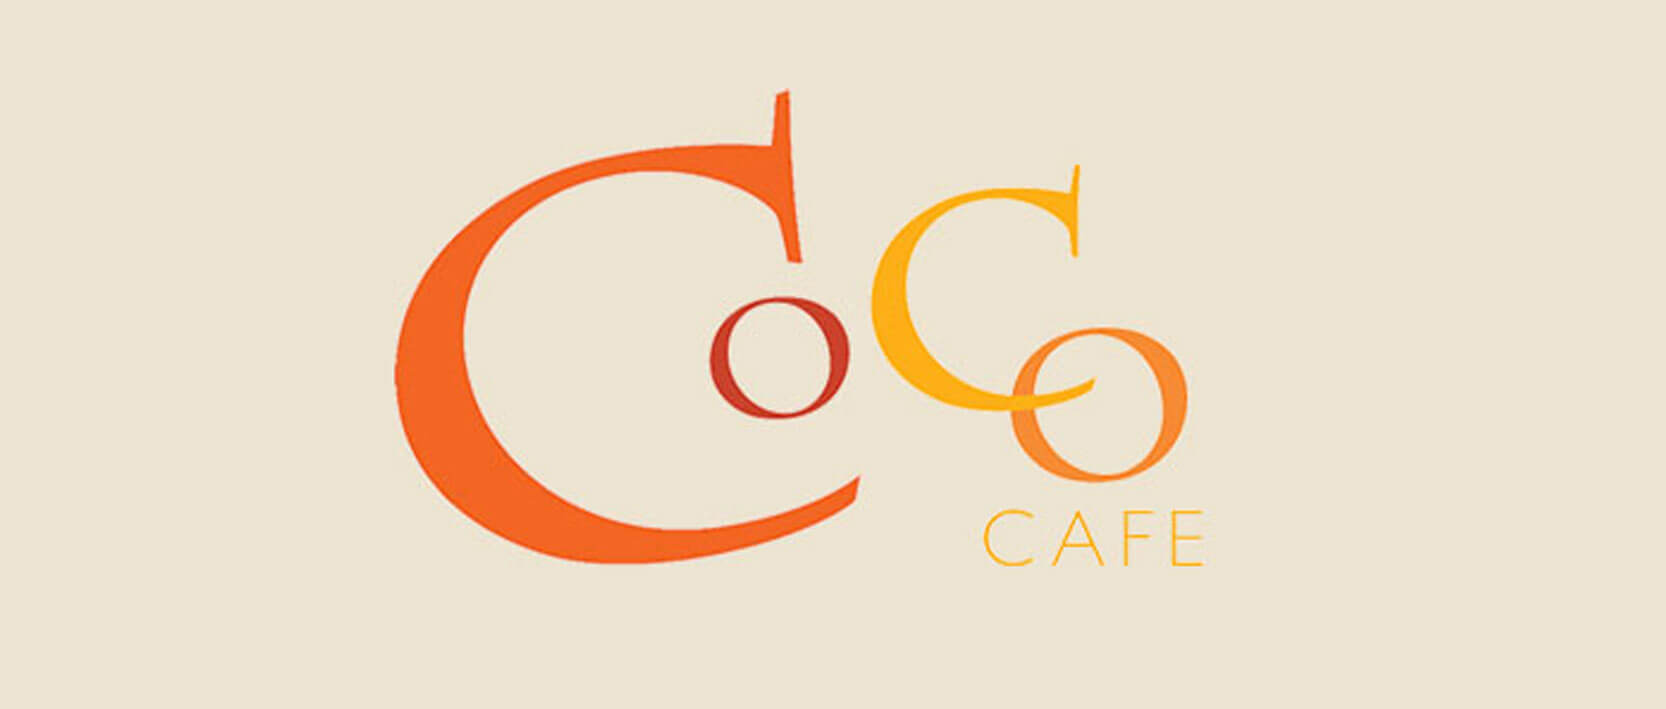 Dreams Los Cabos Suites Restaurants and Bars - Coco Cafe